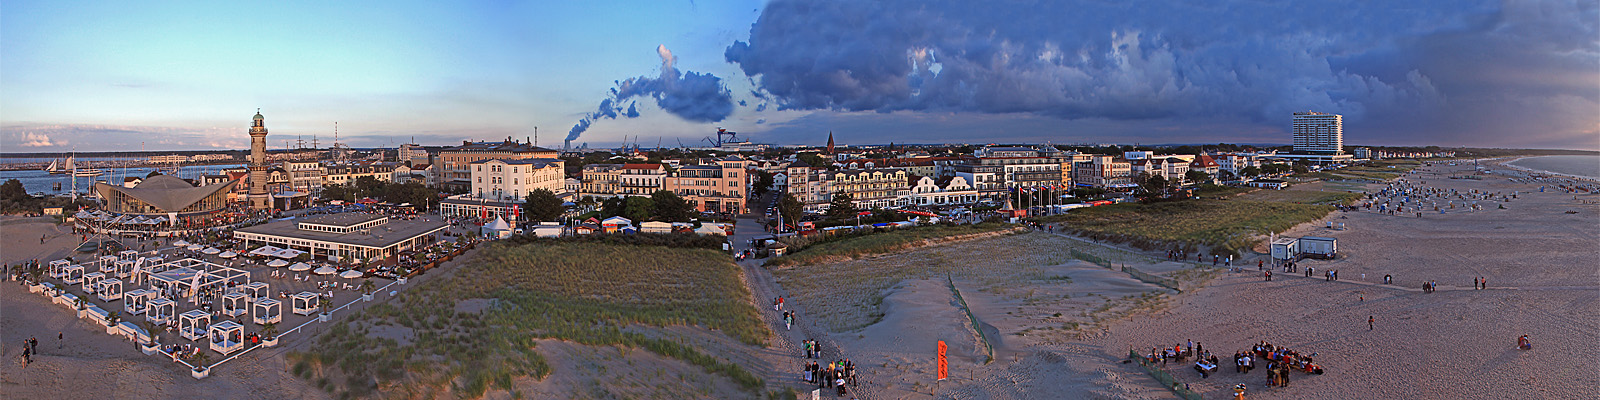 Panorama: Warnemünde Strandpromenade im Abendlicht - Motivnummer: hro-war-10